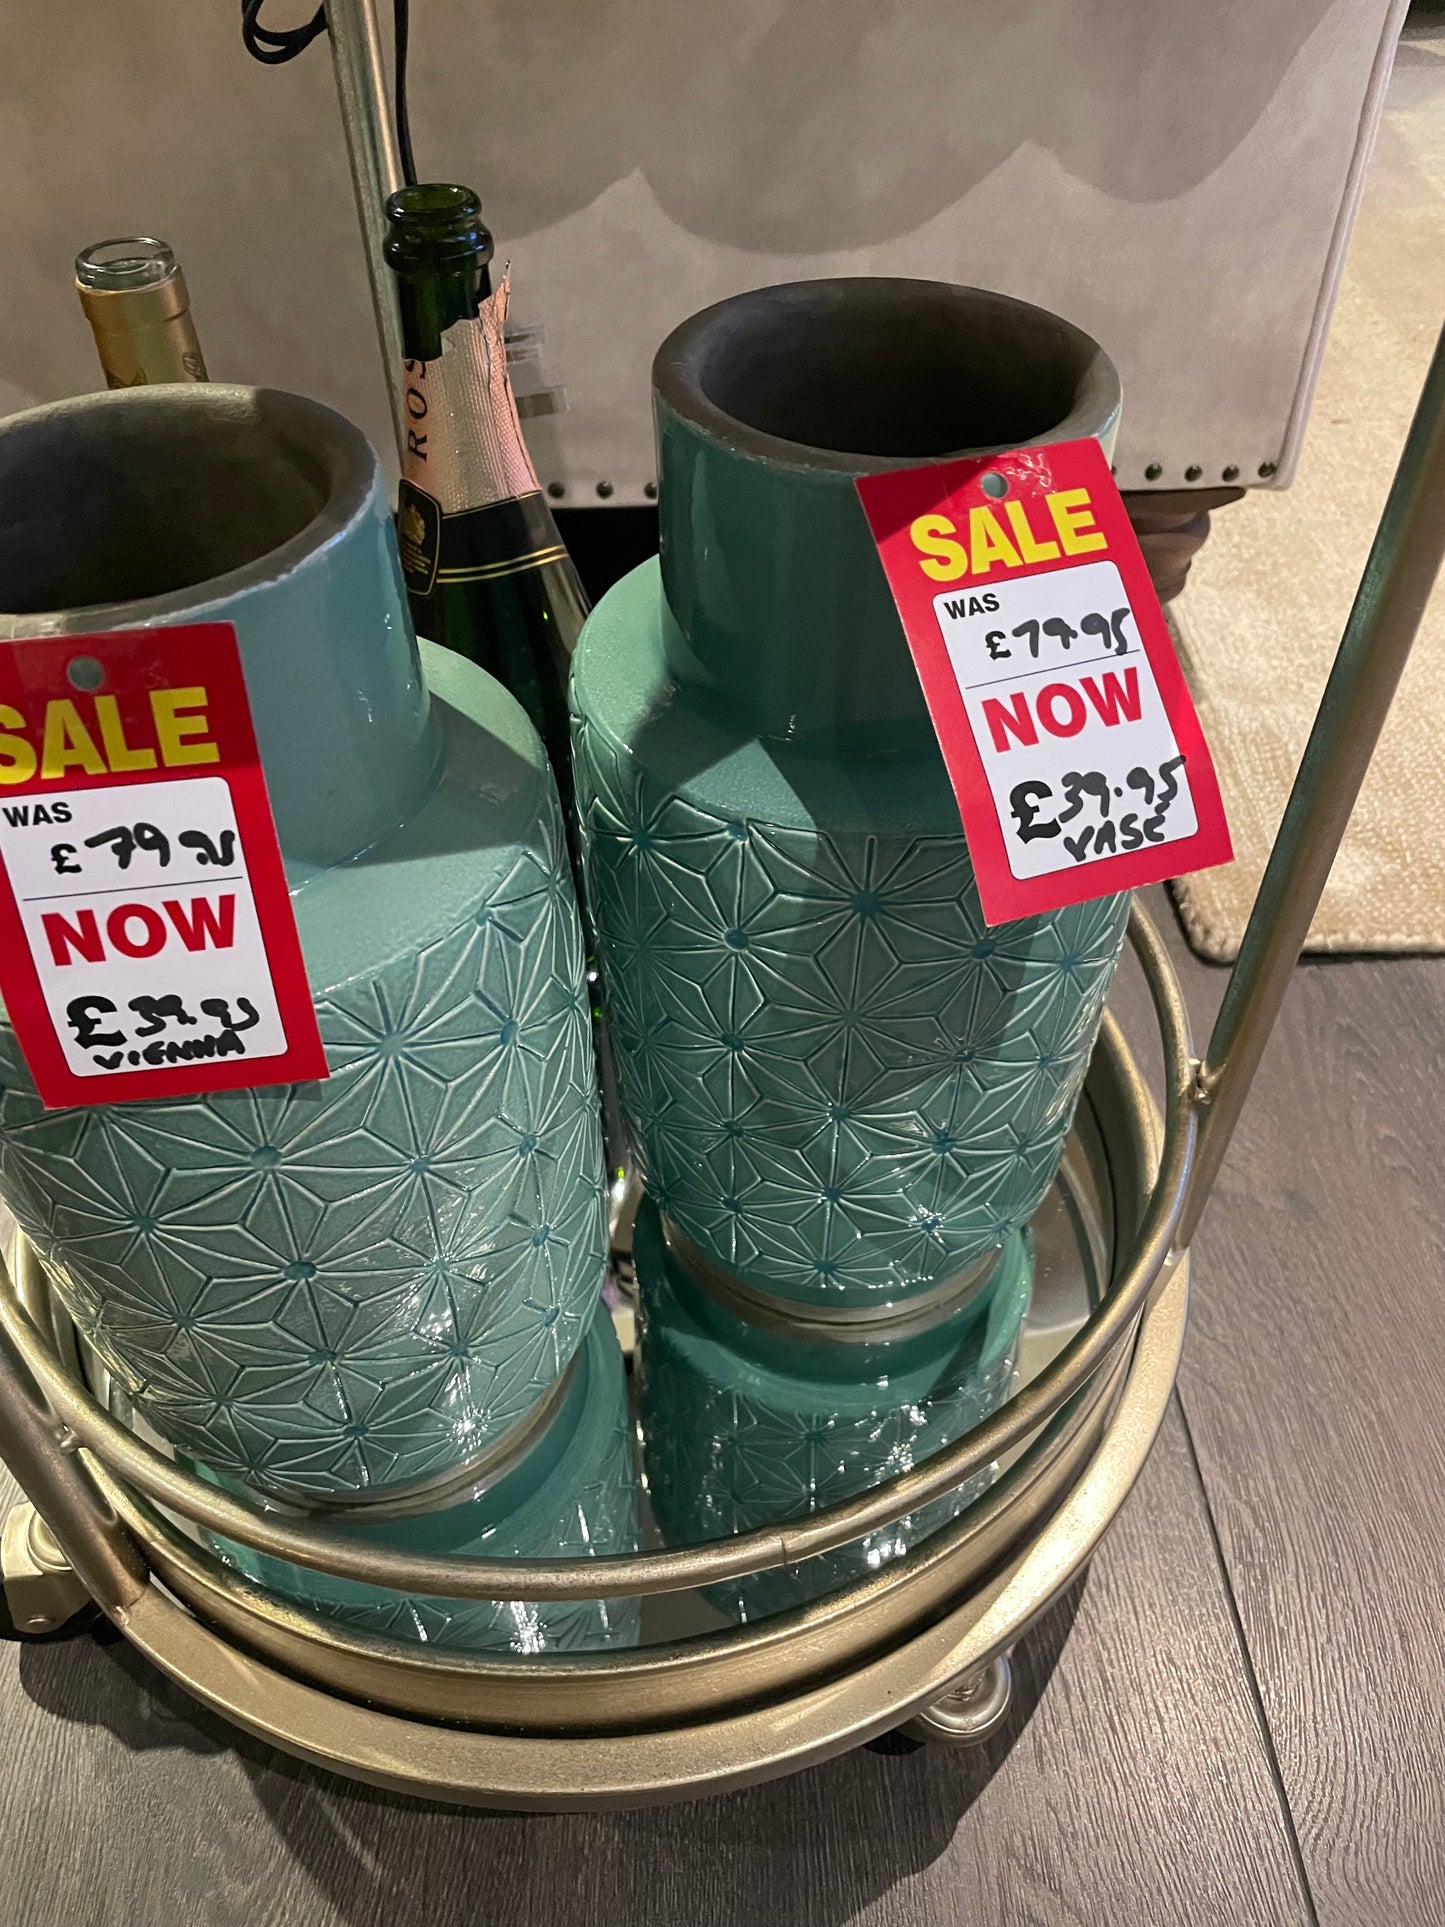 Vase bargains for click n collect